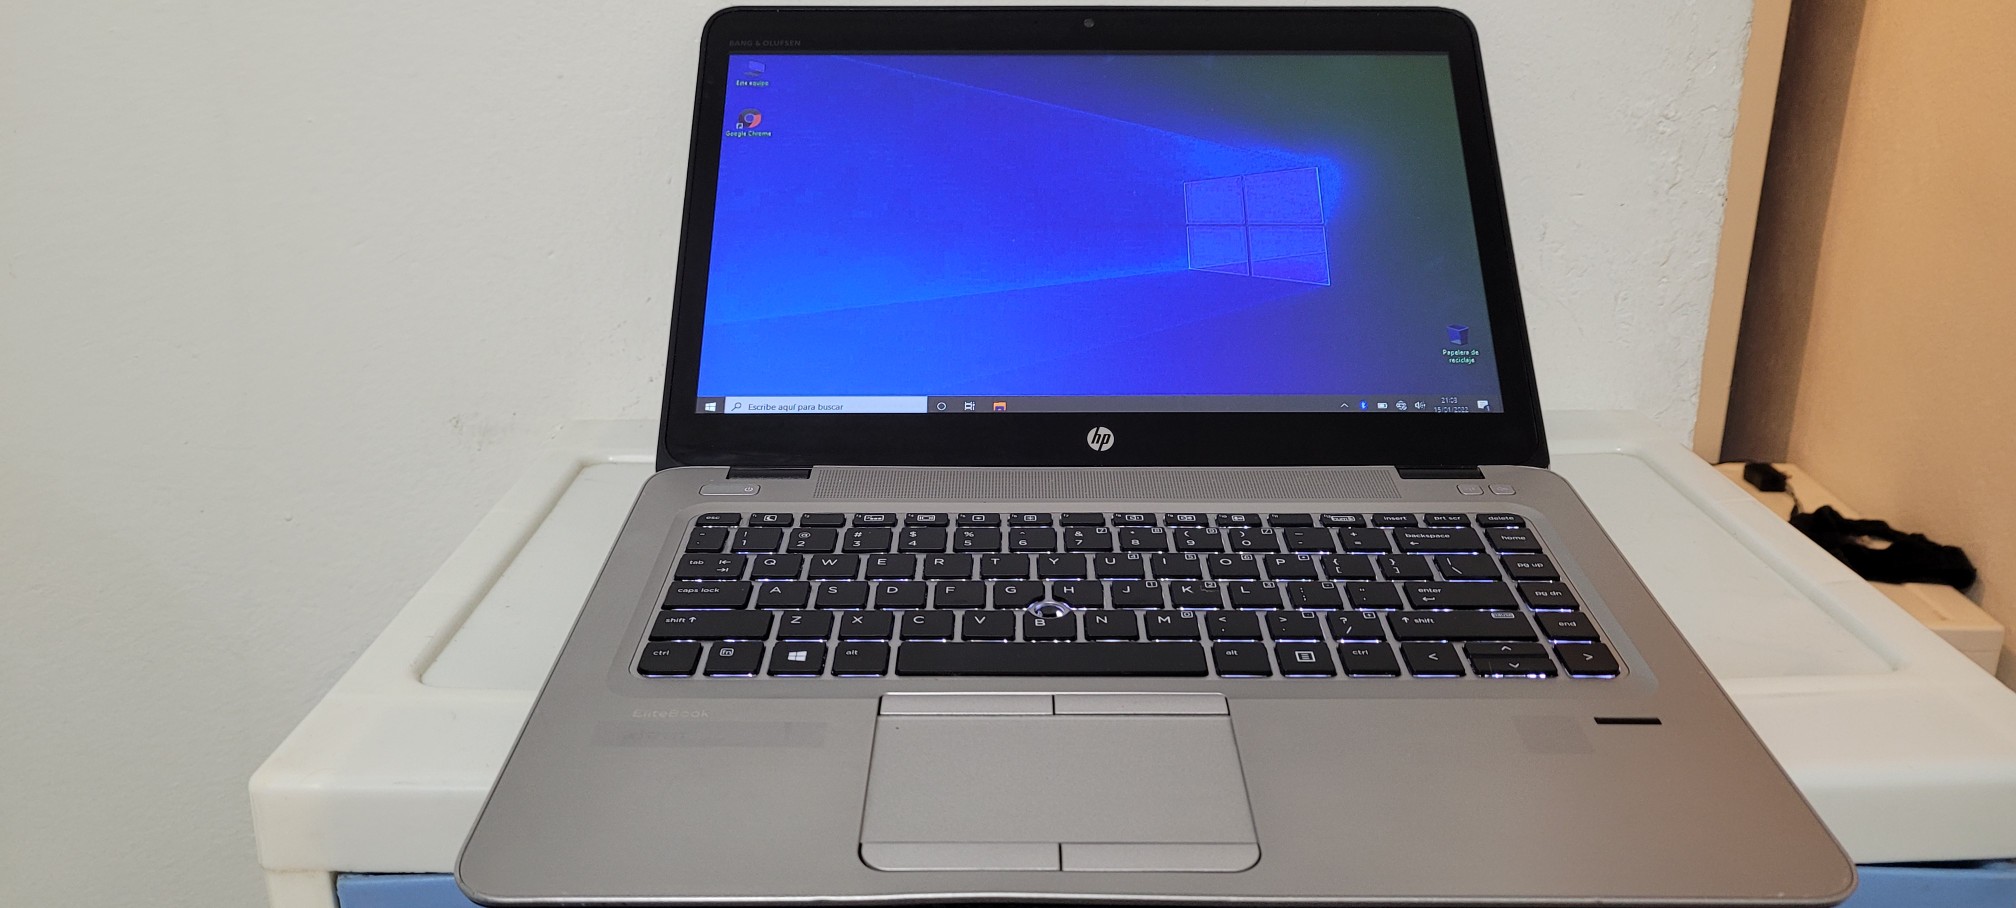 computadoras y laptops - Laptop hp Pantalla Touch Core i5 7ma Gen Ram 8gb ddr4 Disco 128gb SSD Y 320GB